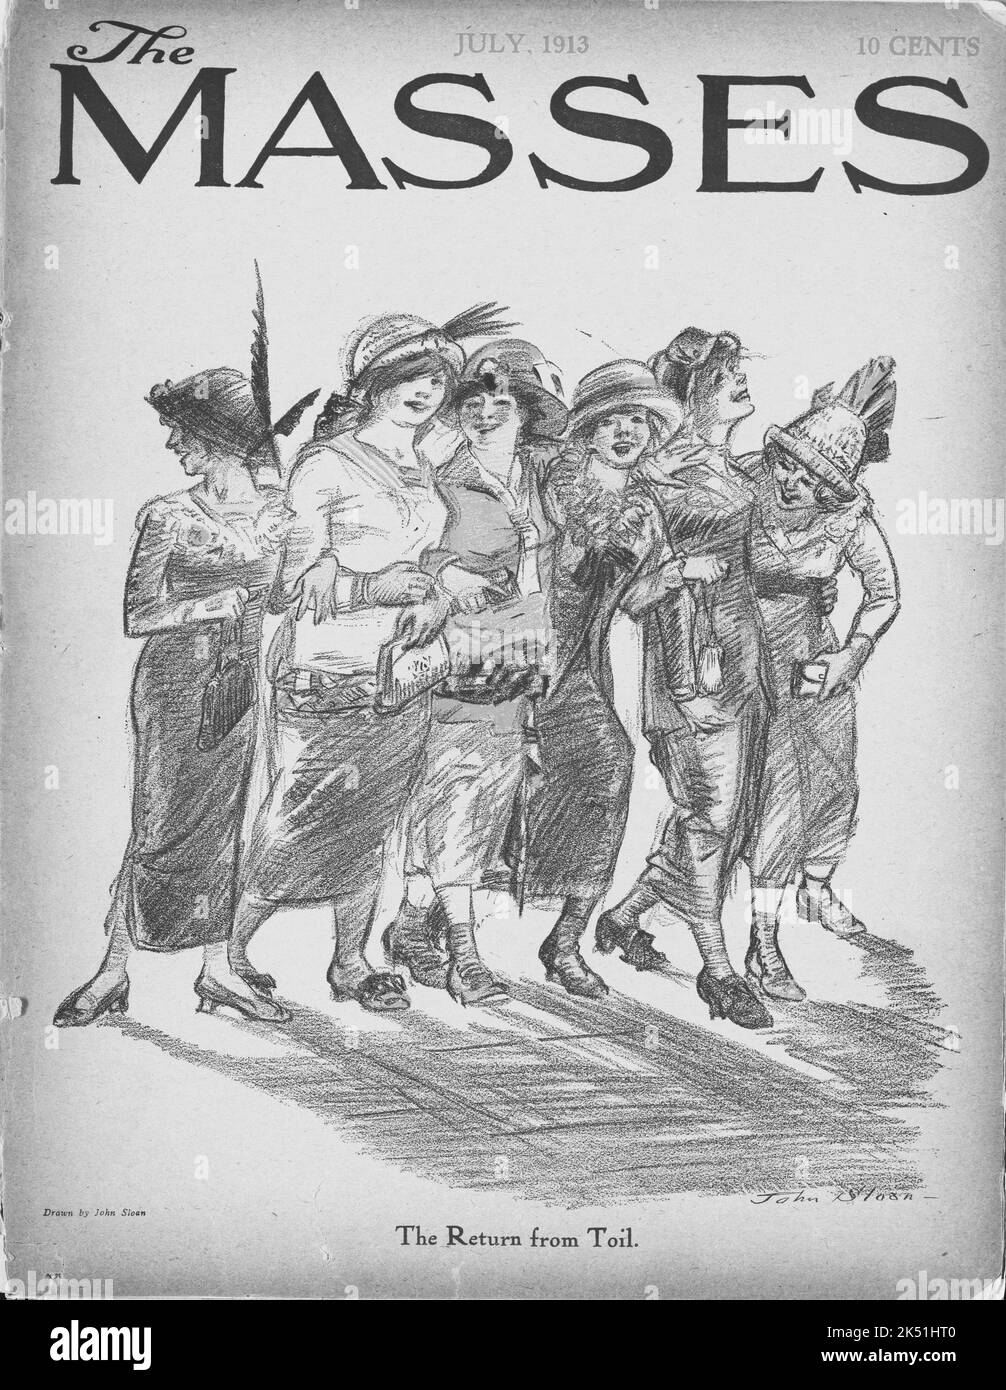 'The Return from toil', dessin de John Sloan (1871-1951), publié sur la couverture de 'The masses', juillet 1913 Banque D'Images